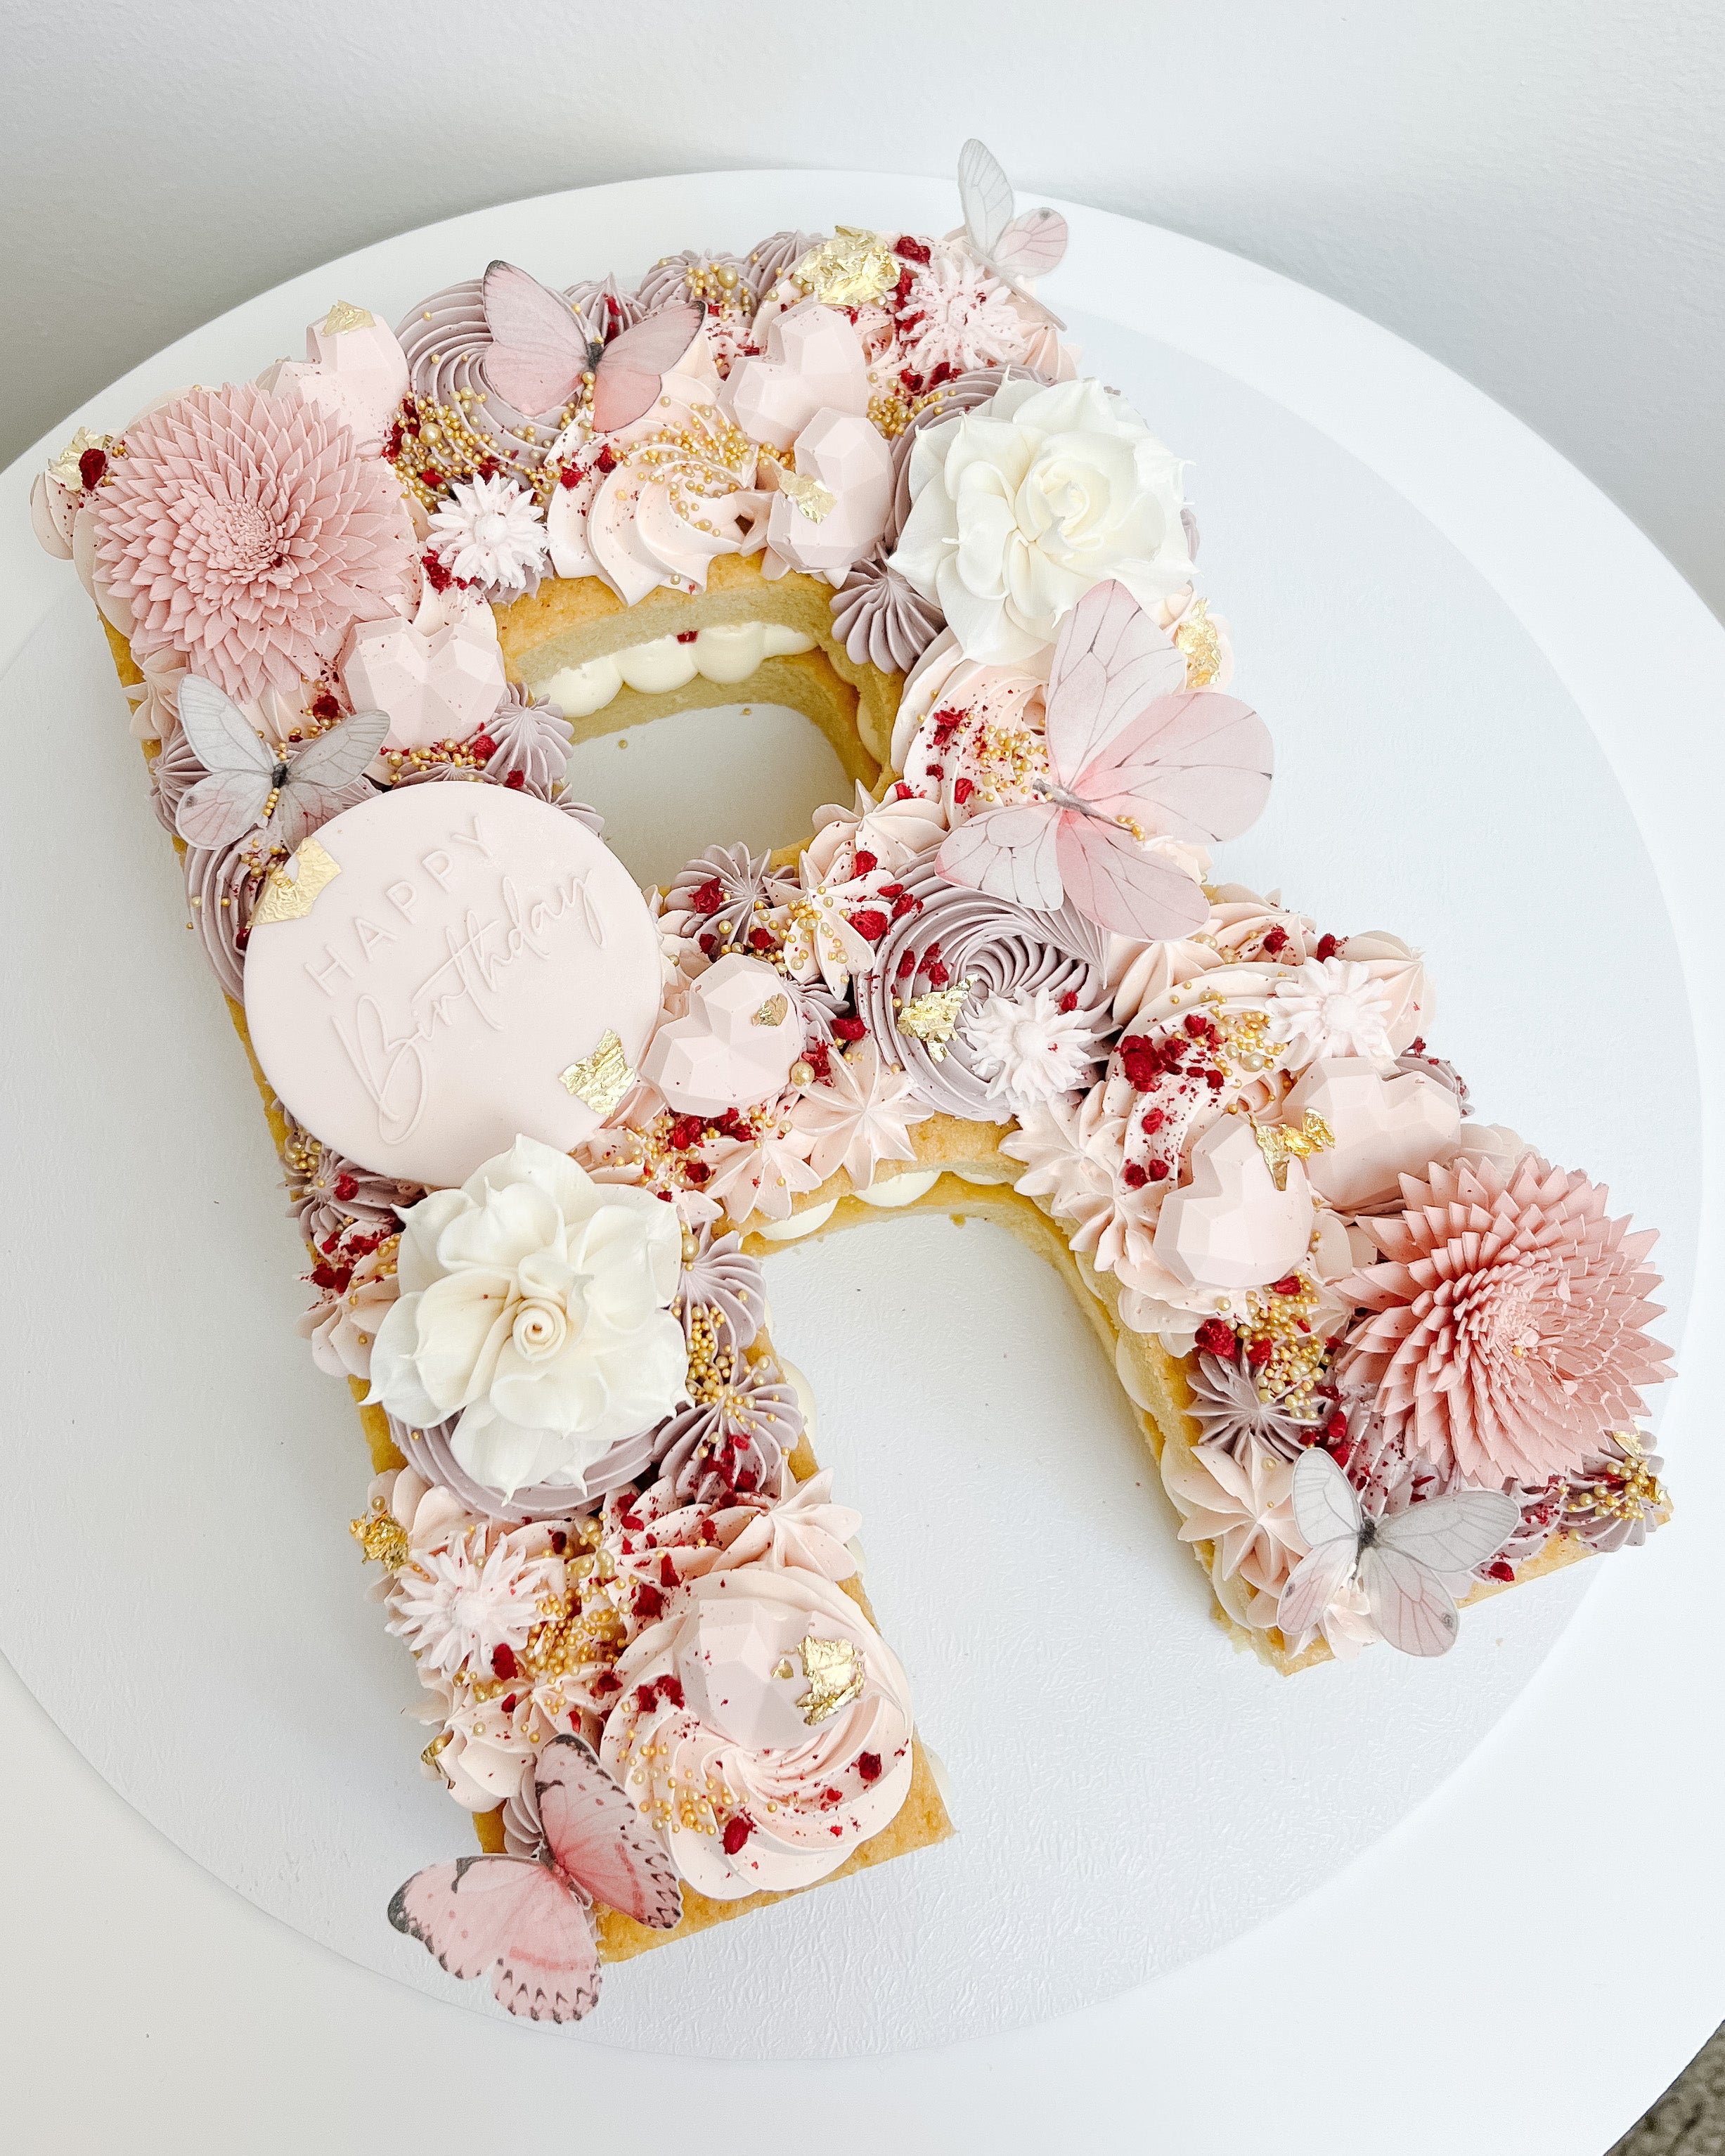 5th Birthday Cake Design For Girls - Letter Number Cakes